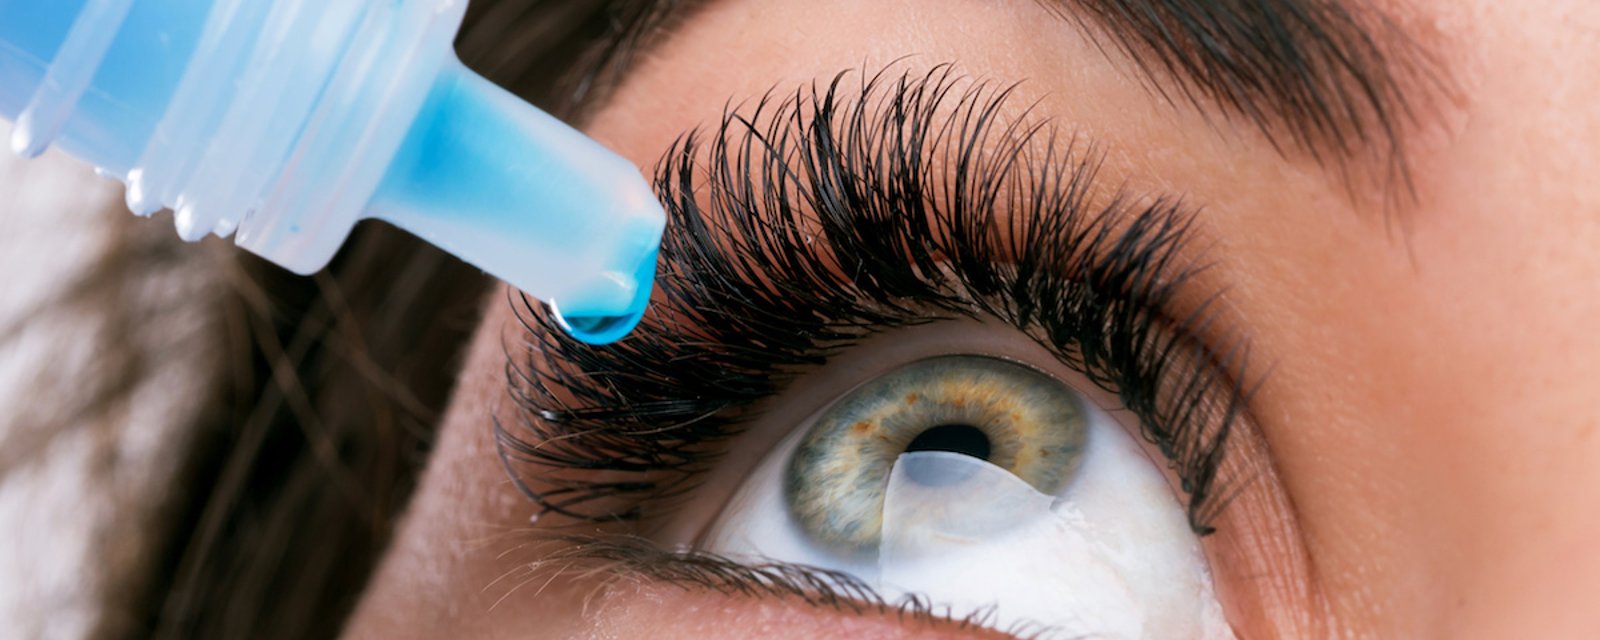 La myopie pourrait être un jour guérie grâce à des gouttes oculaires